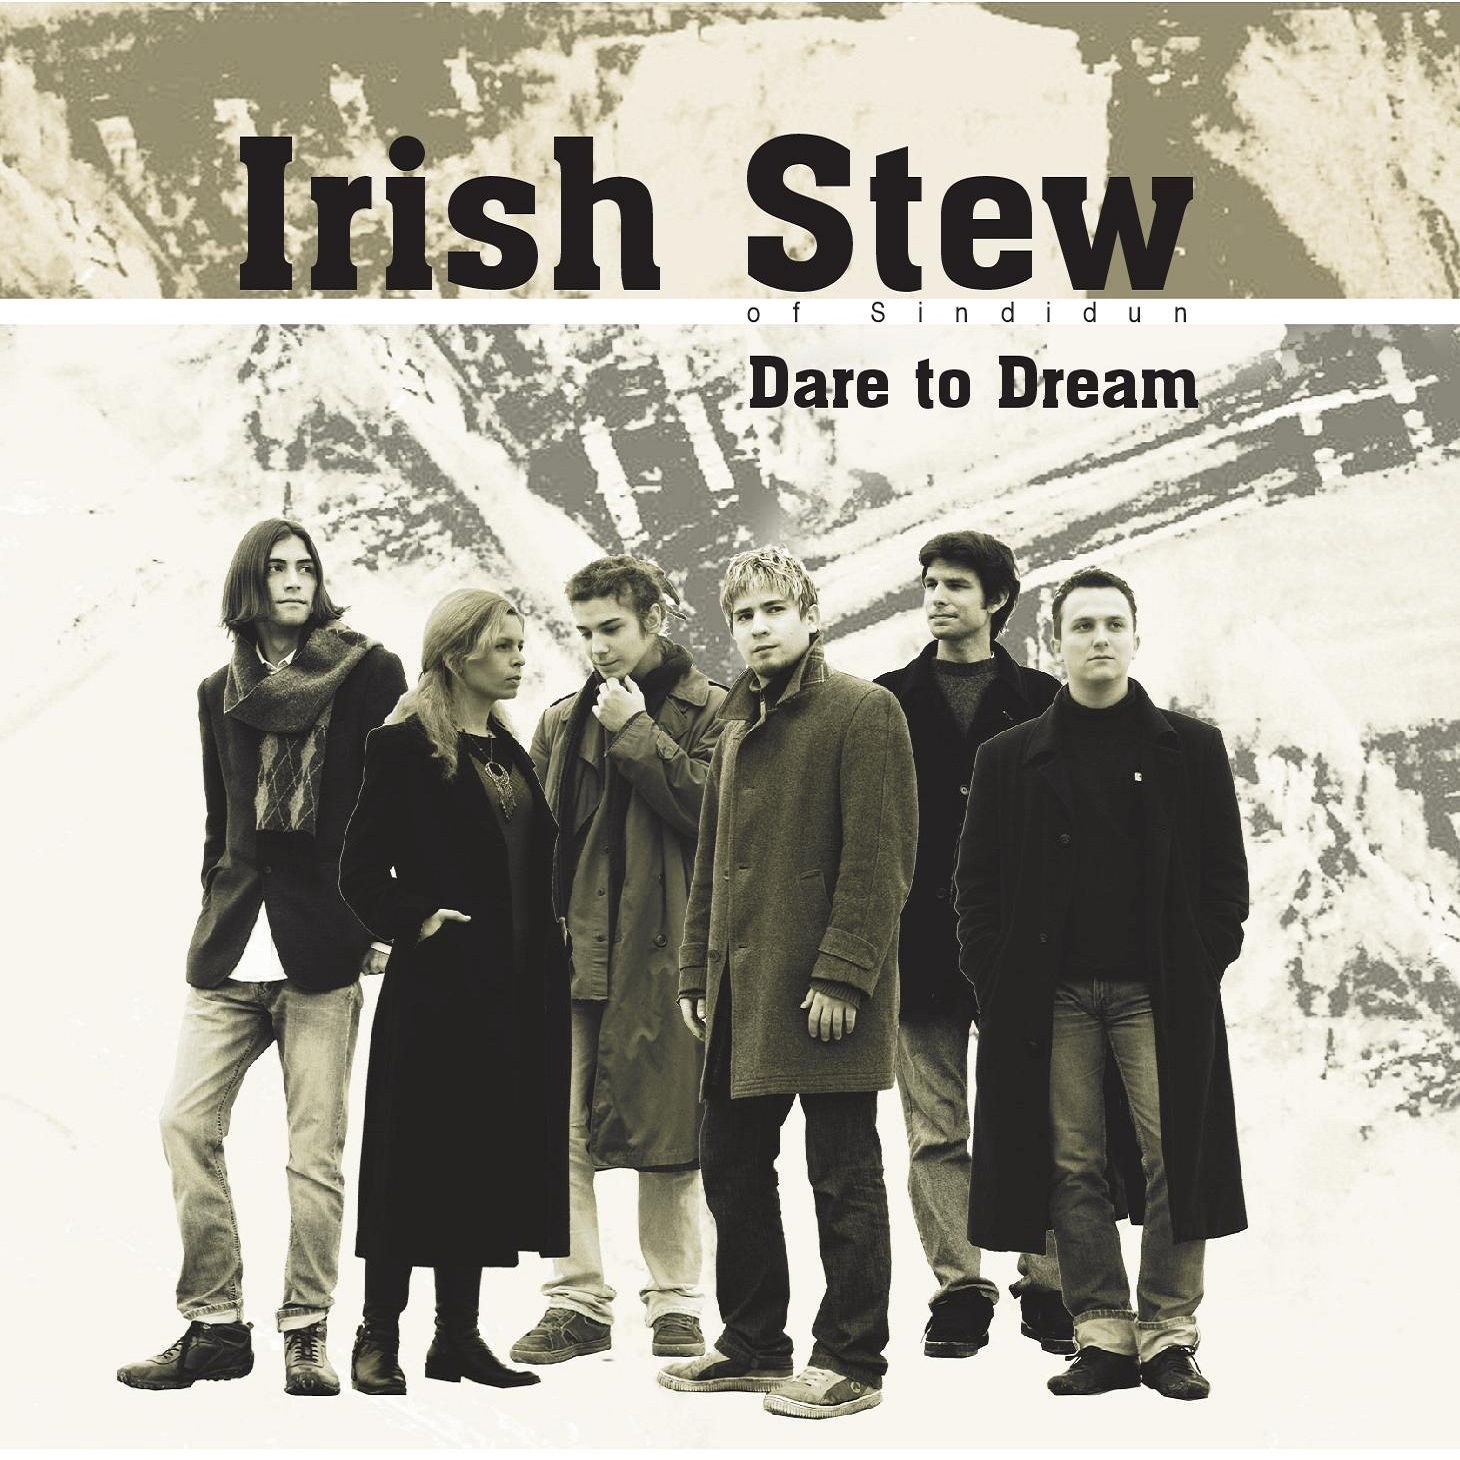 Dare To Dream - Irish Stew of Sindidun